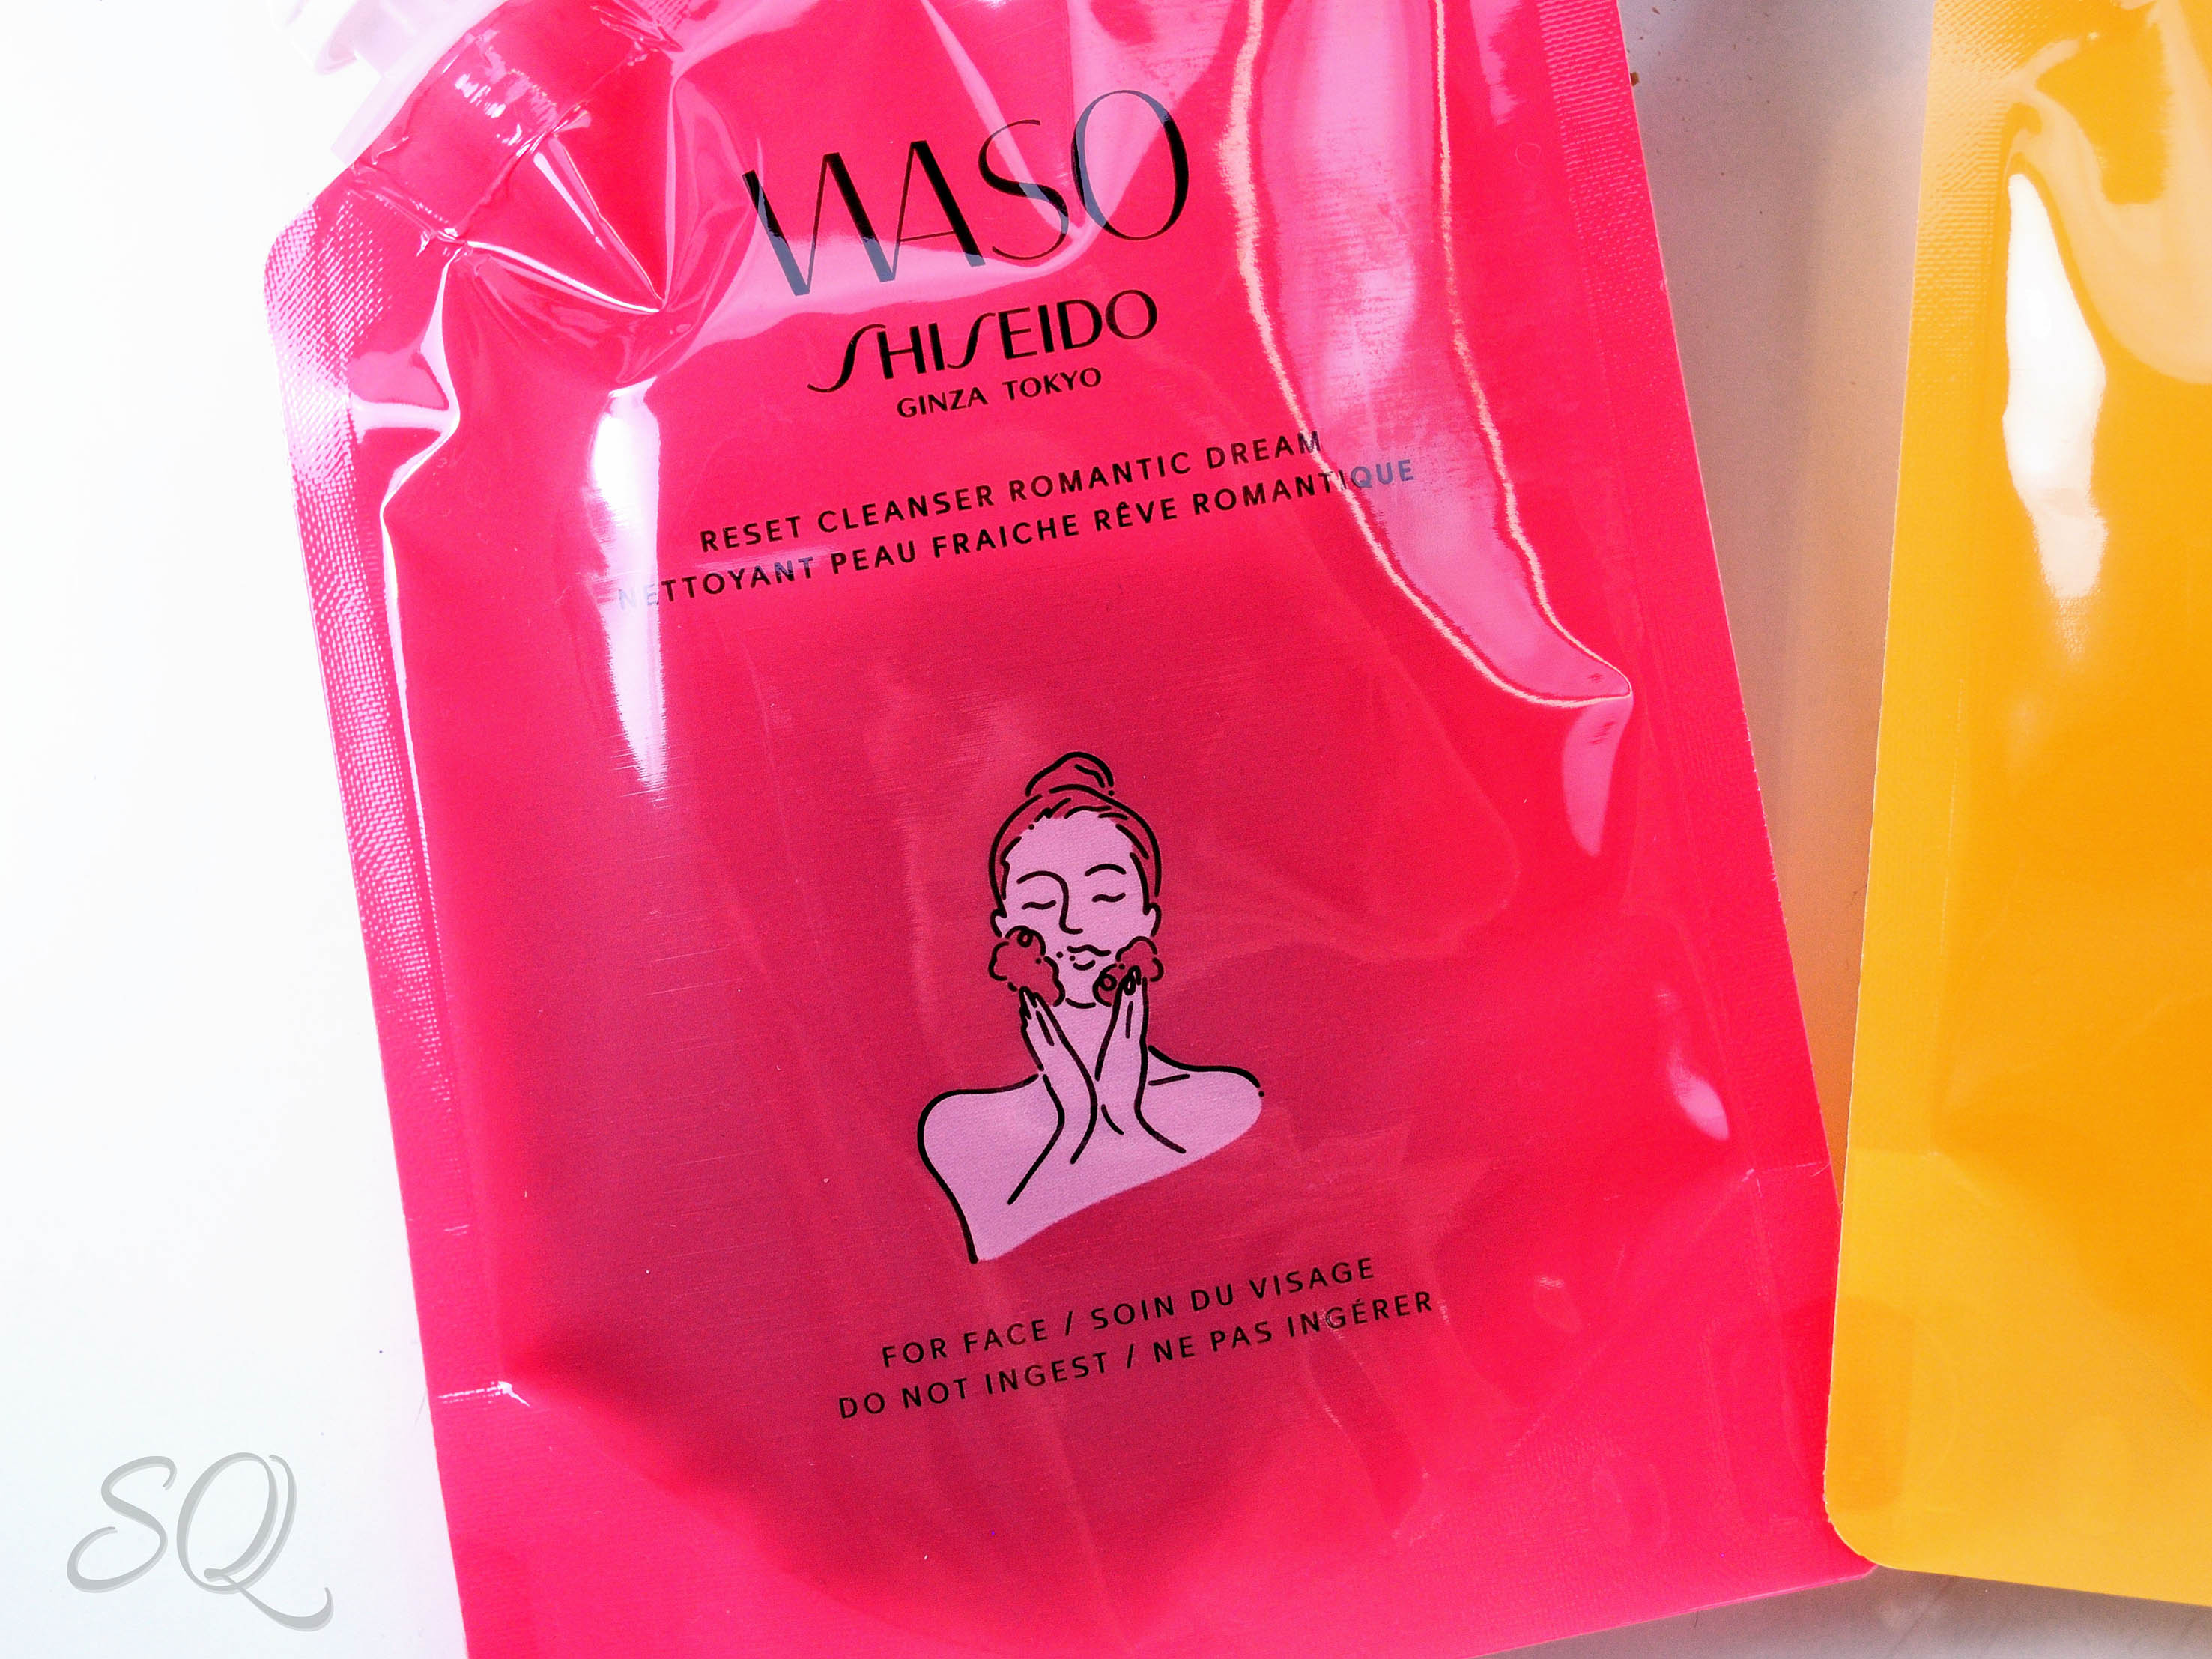 Romantic Dreams de Shiseido